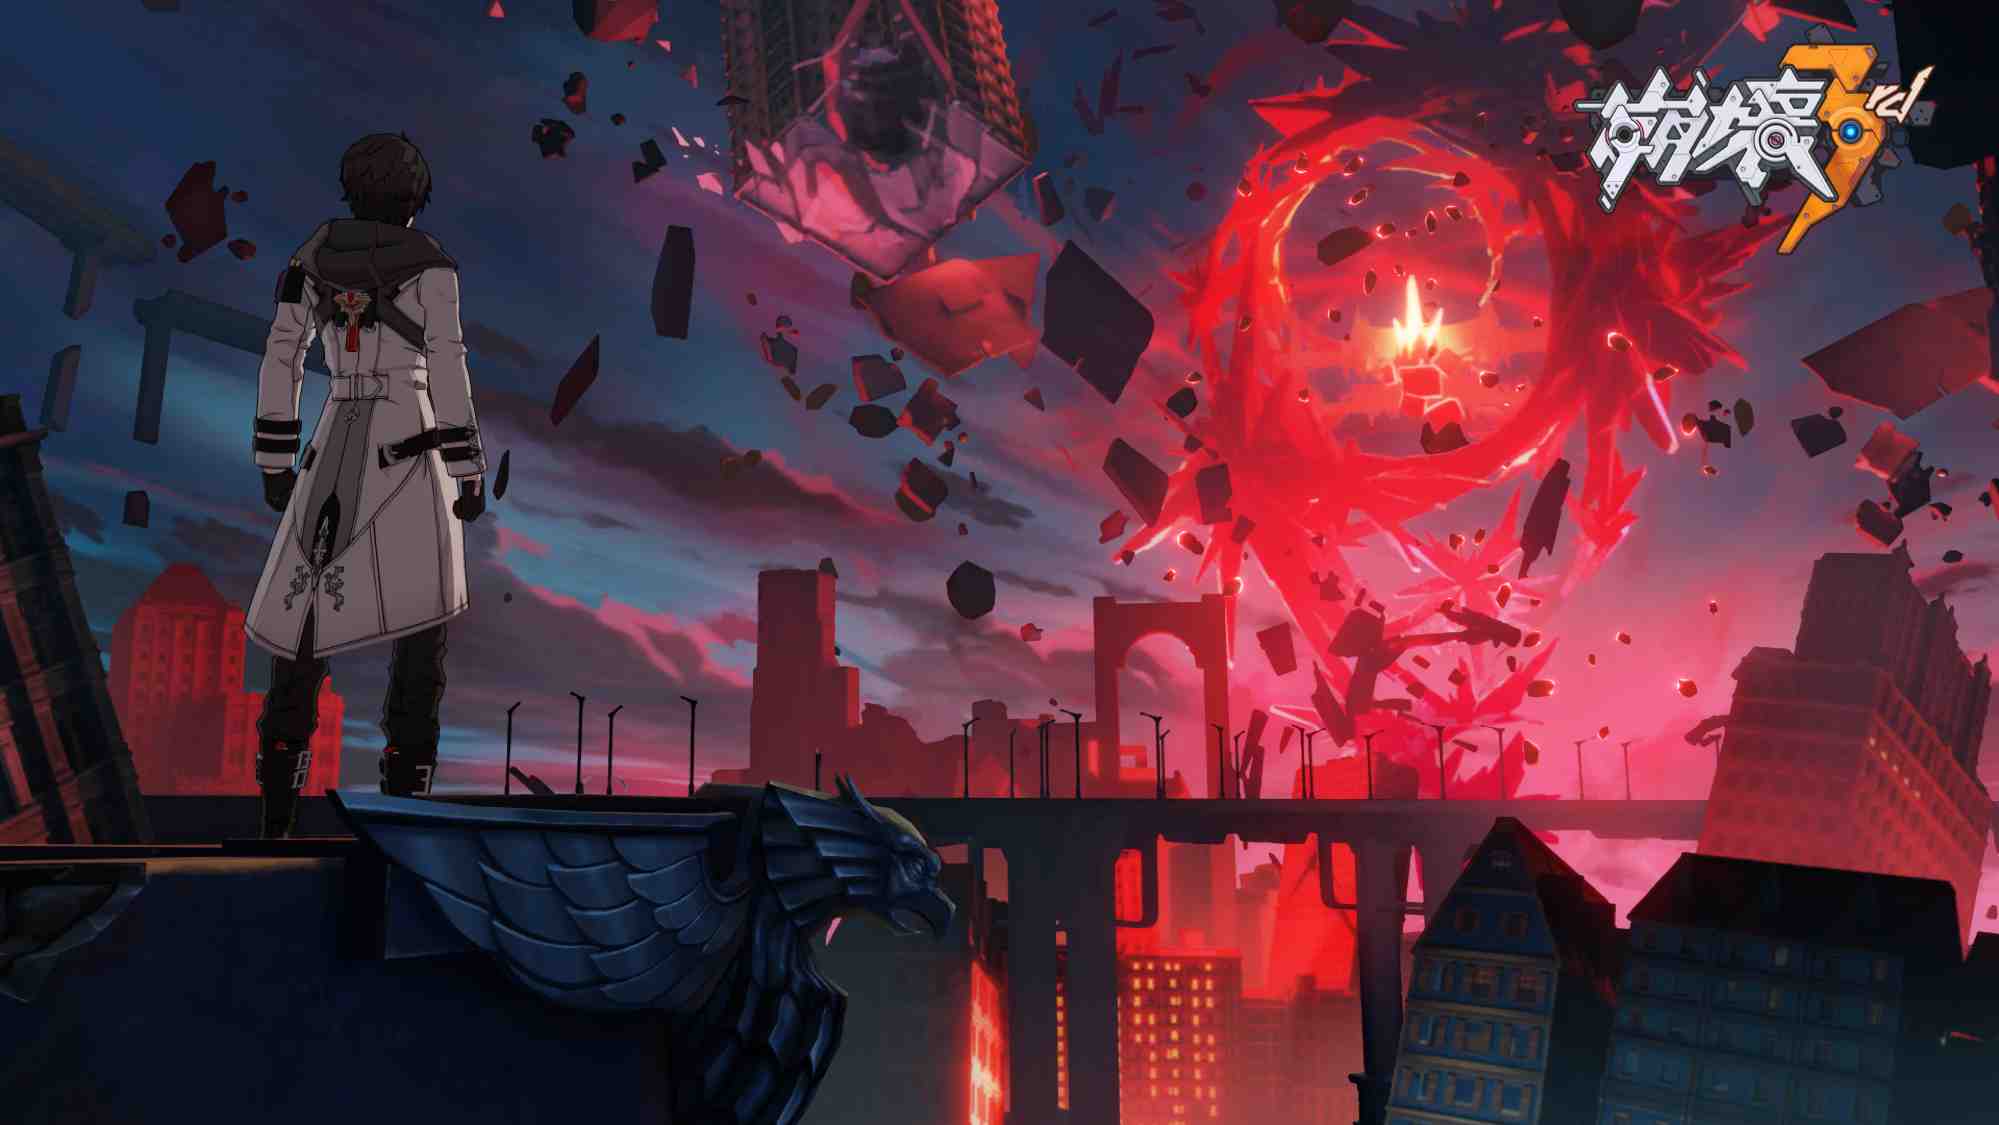 米哈遊 3D 動作遊戲《崩壞3rd》更新3.8版本與全新開放世界「後崩壞書」資料片